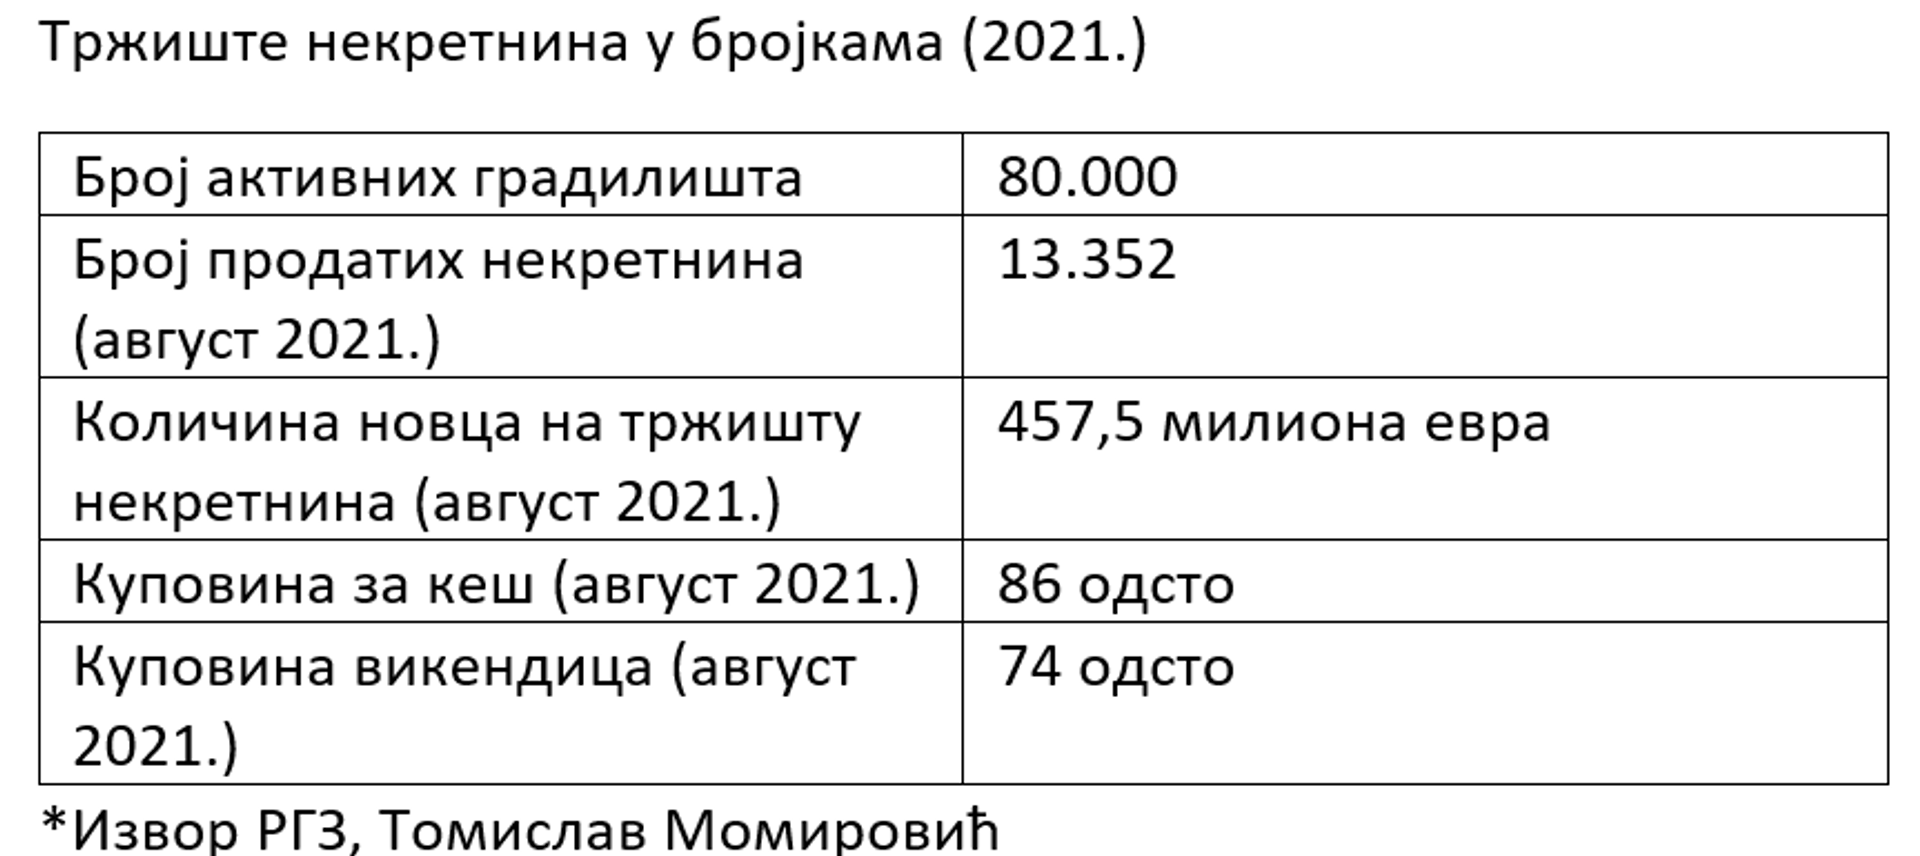 Табела, тржиште некретнина 2021. - Sputnik Србија, 1920, 25.09.2021